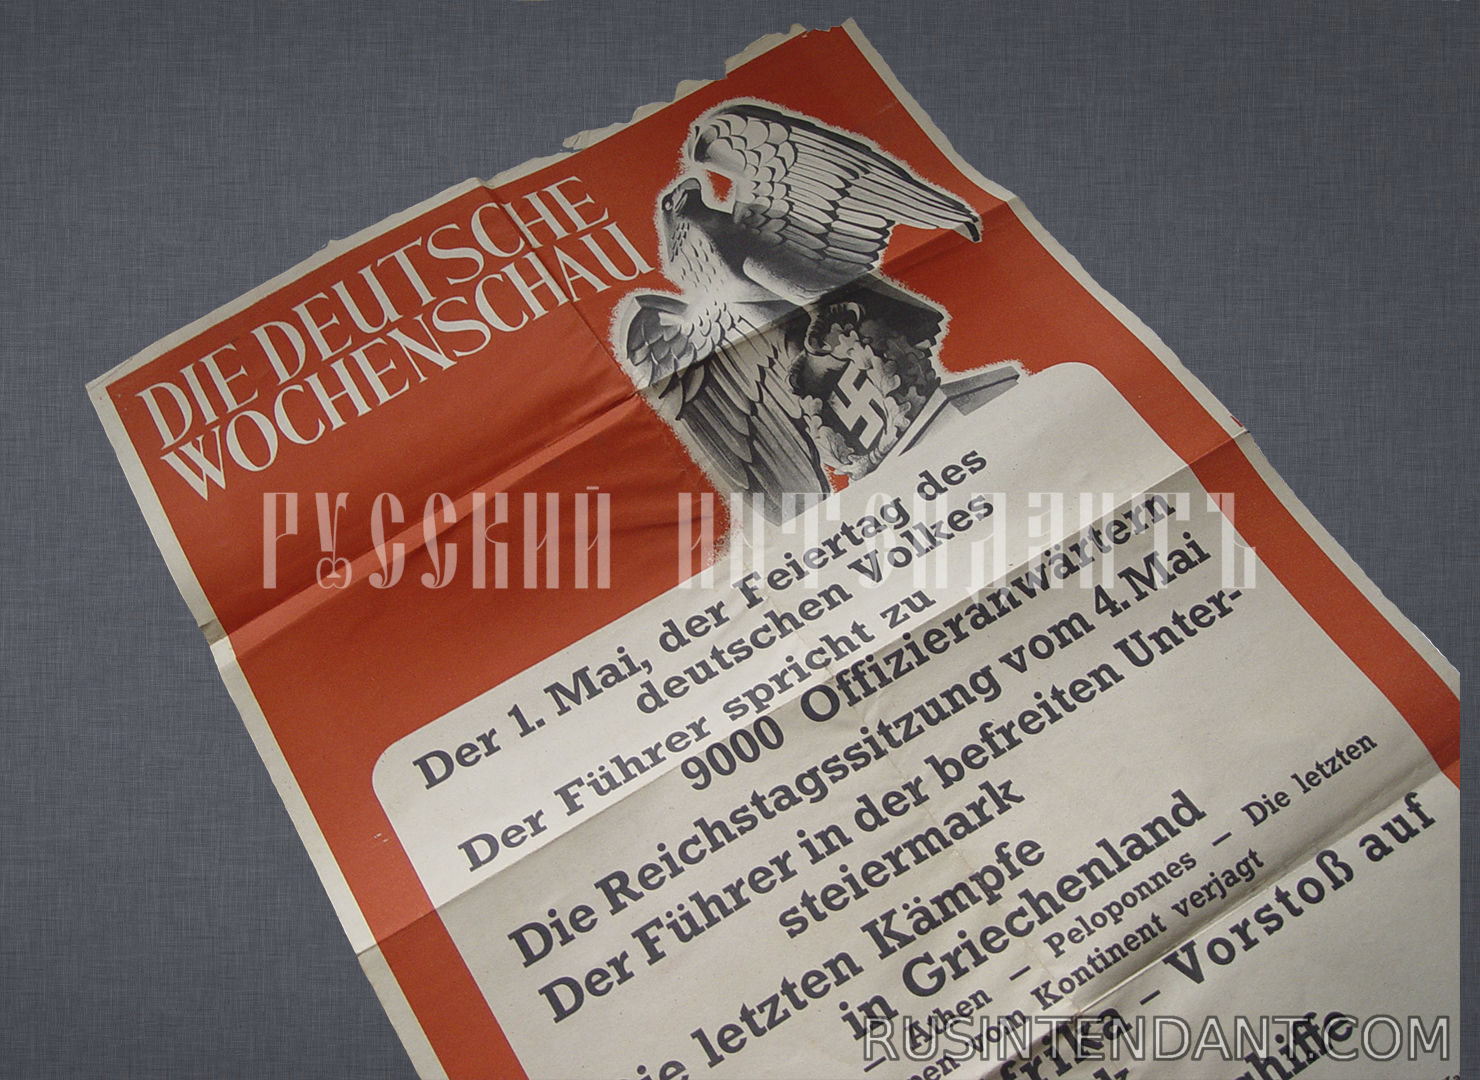 Фото 2: Типографский плакат  киножурнала "Немецкий еженедельник" 